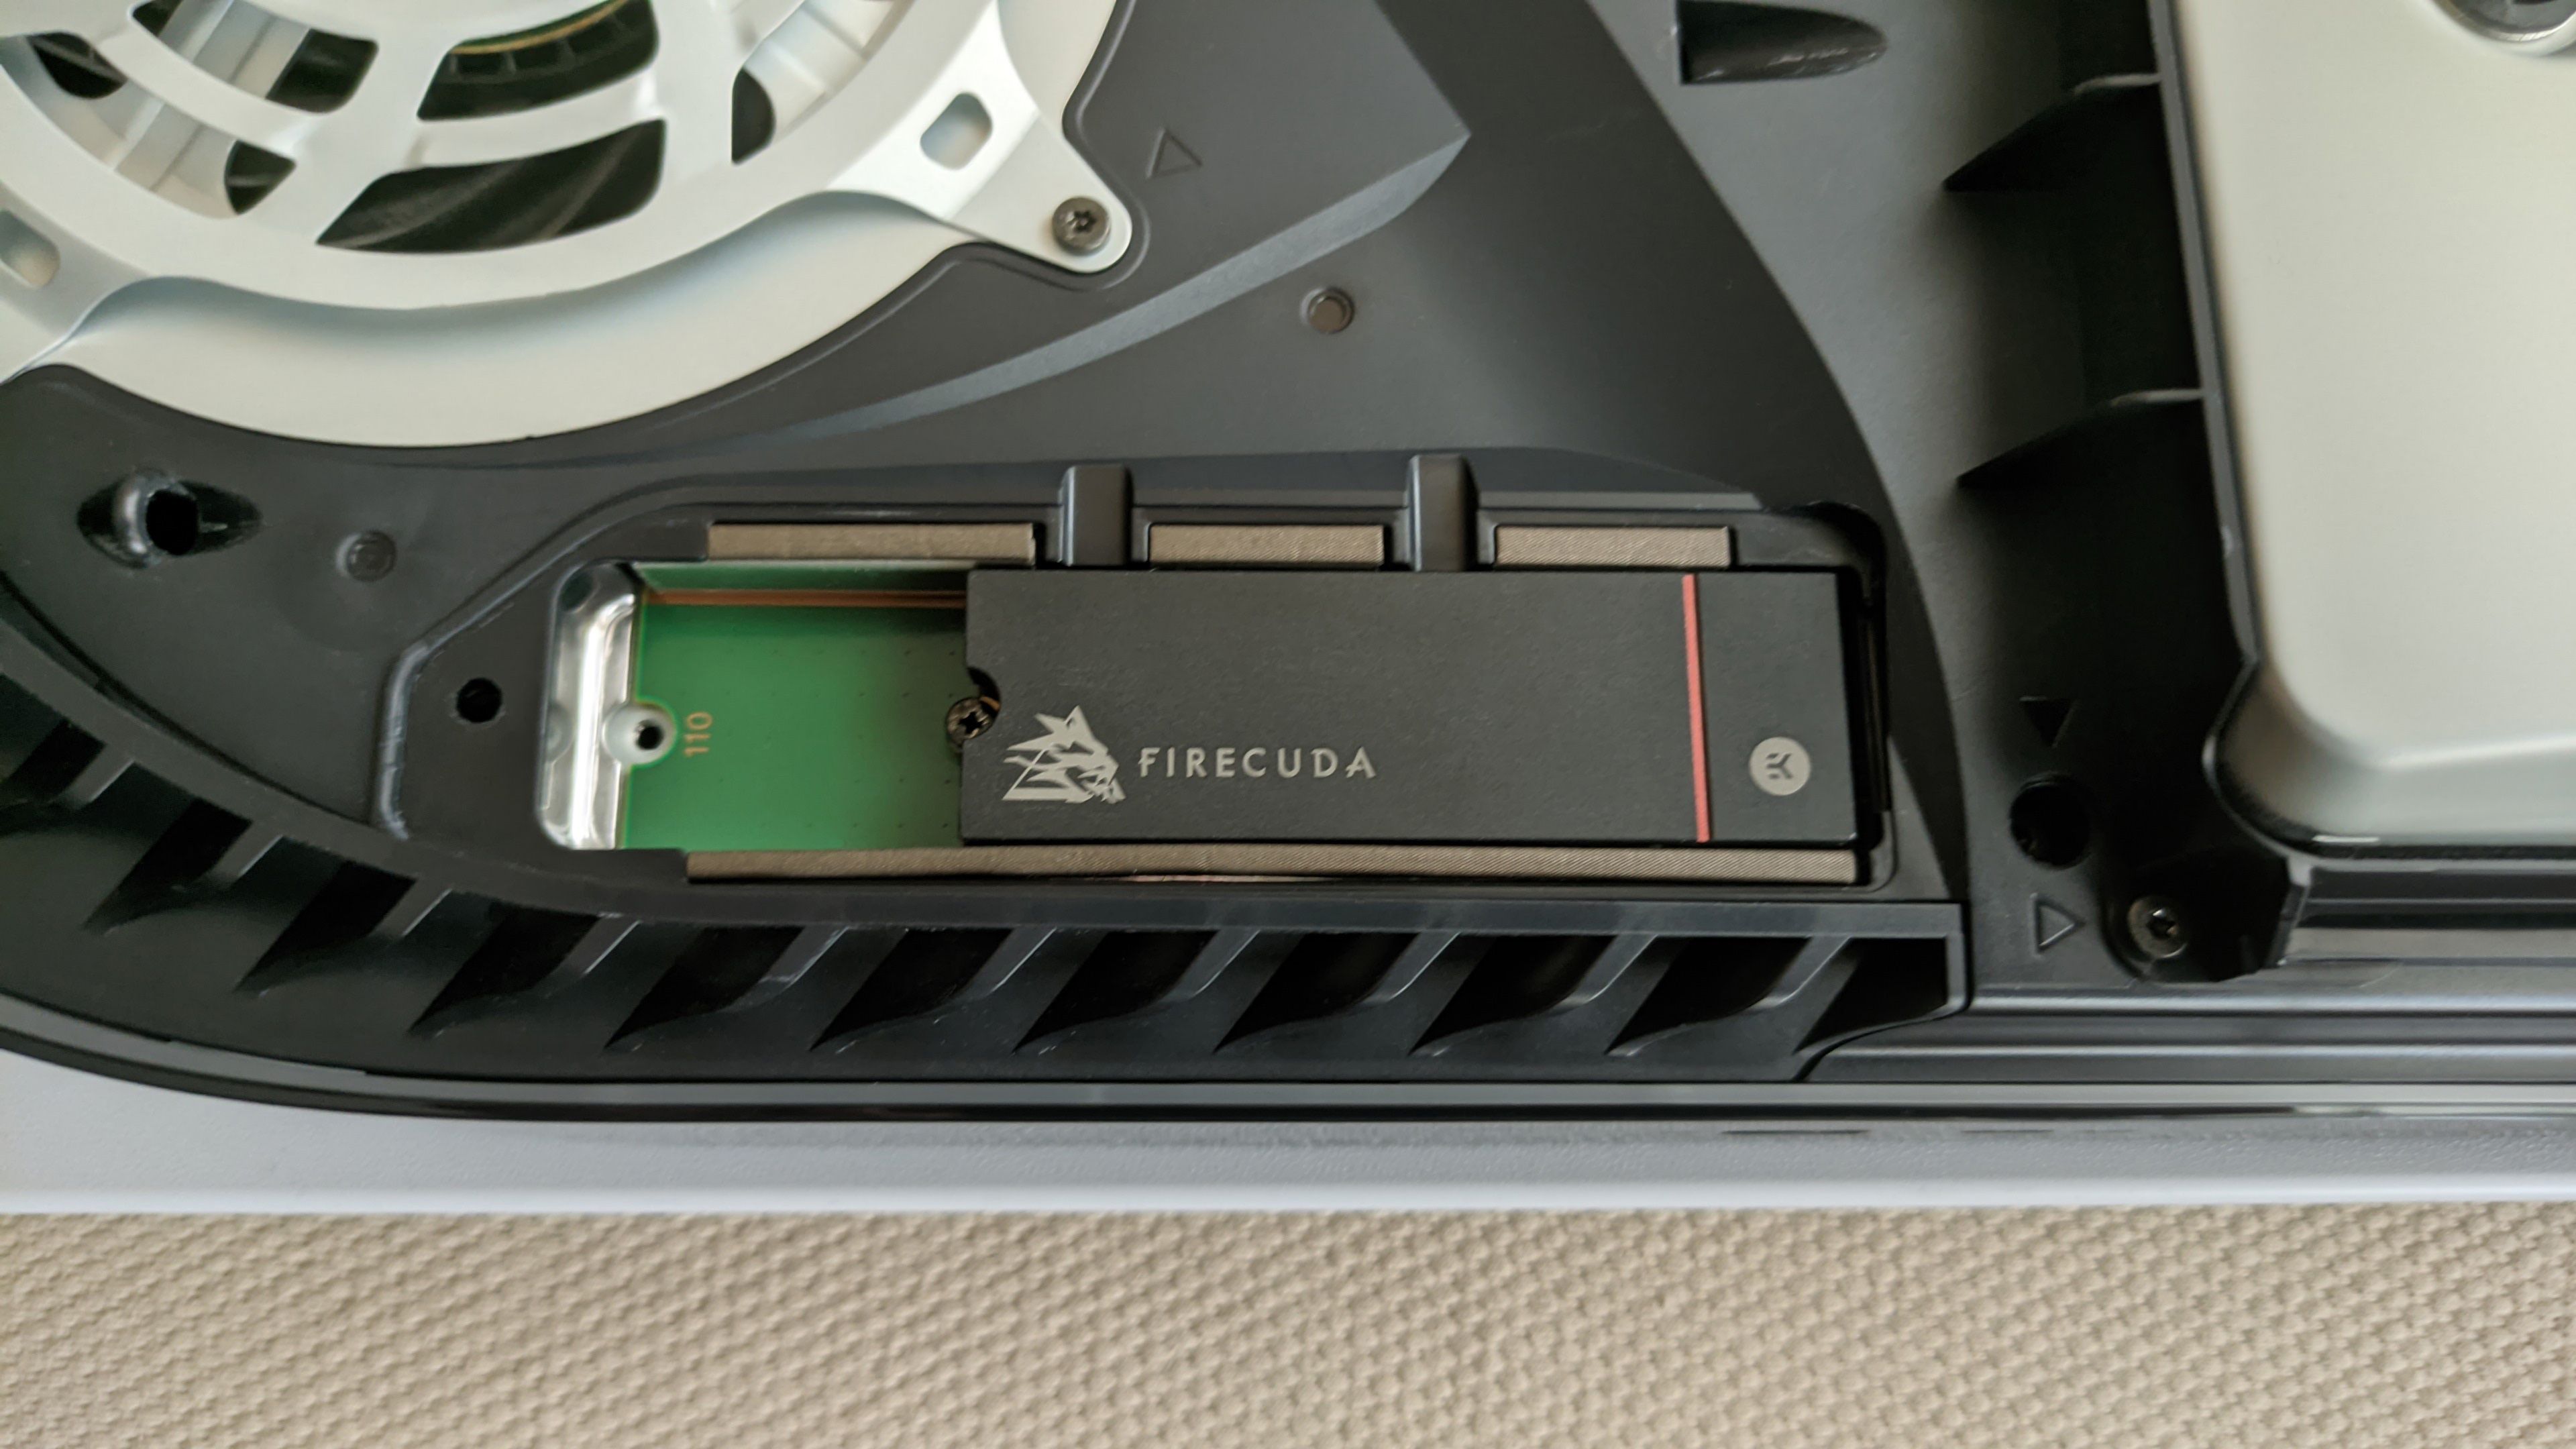 La PS5, destripada: la ranura M.2 PCIe 4.0 destaca, pero atentos